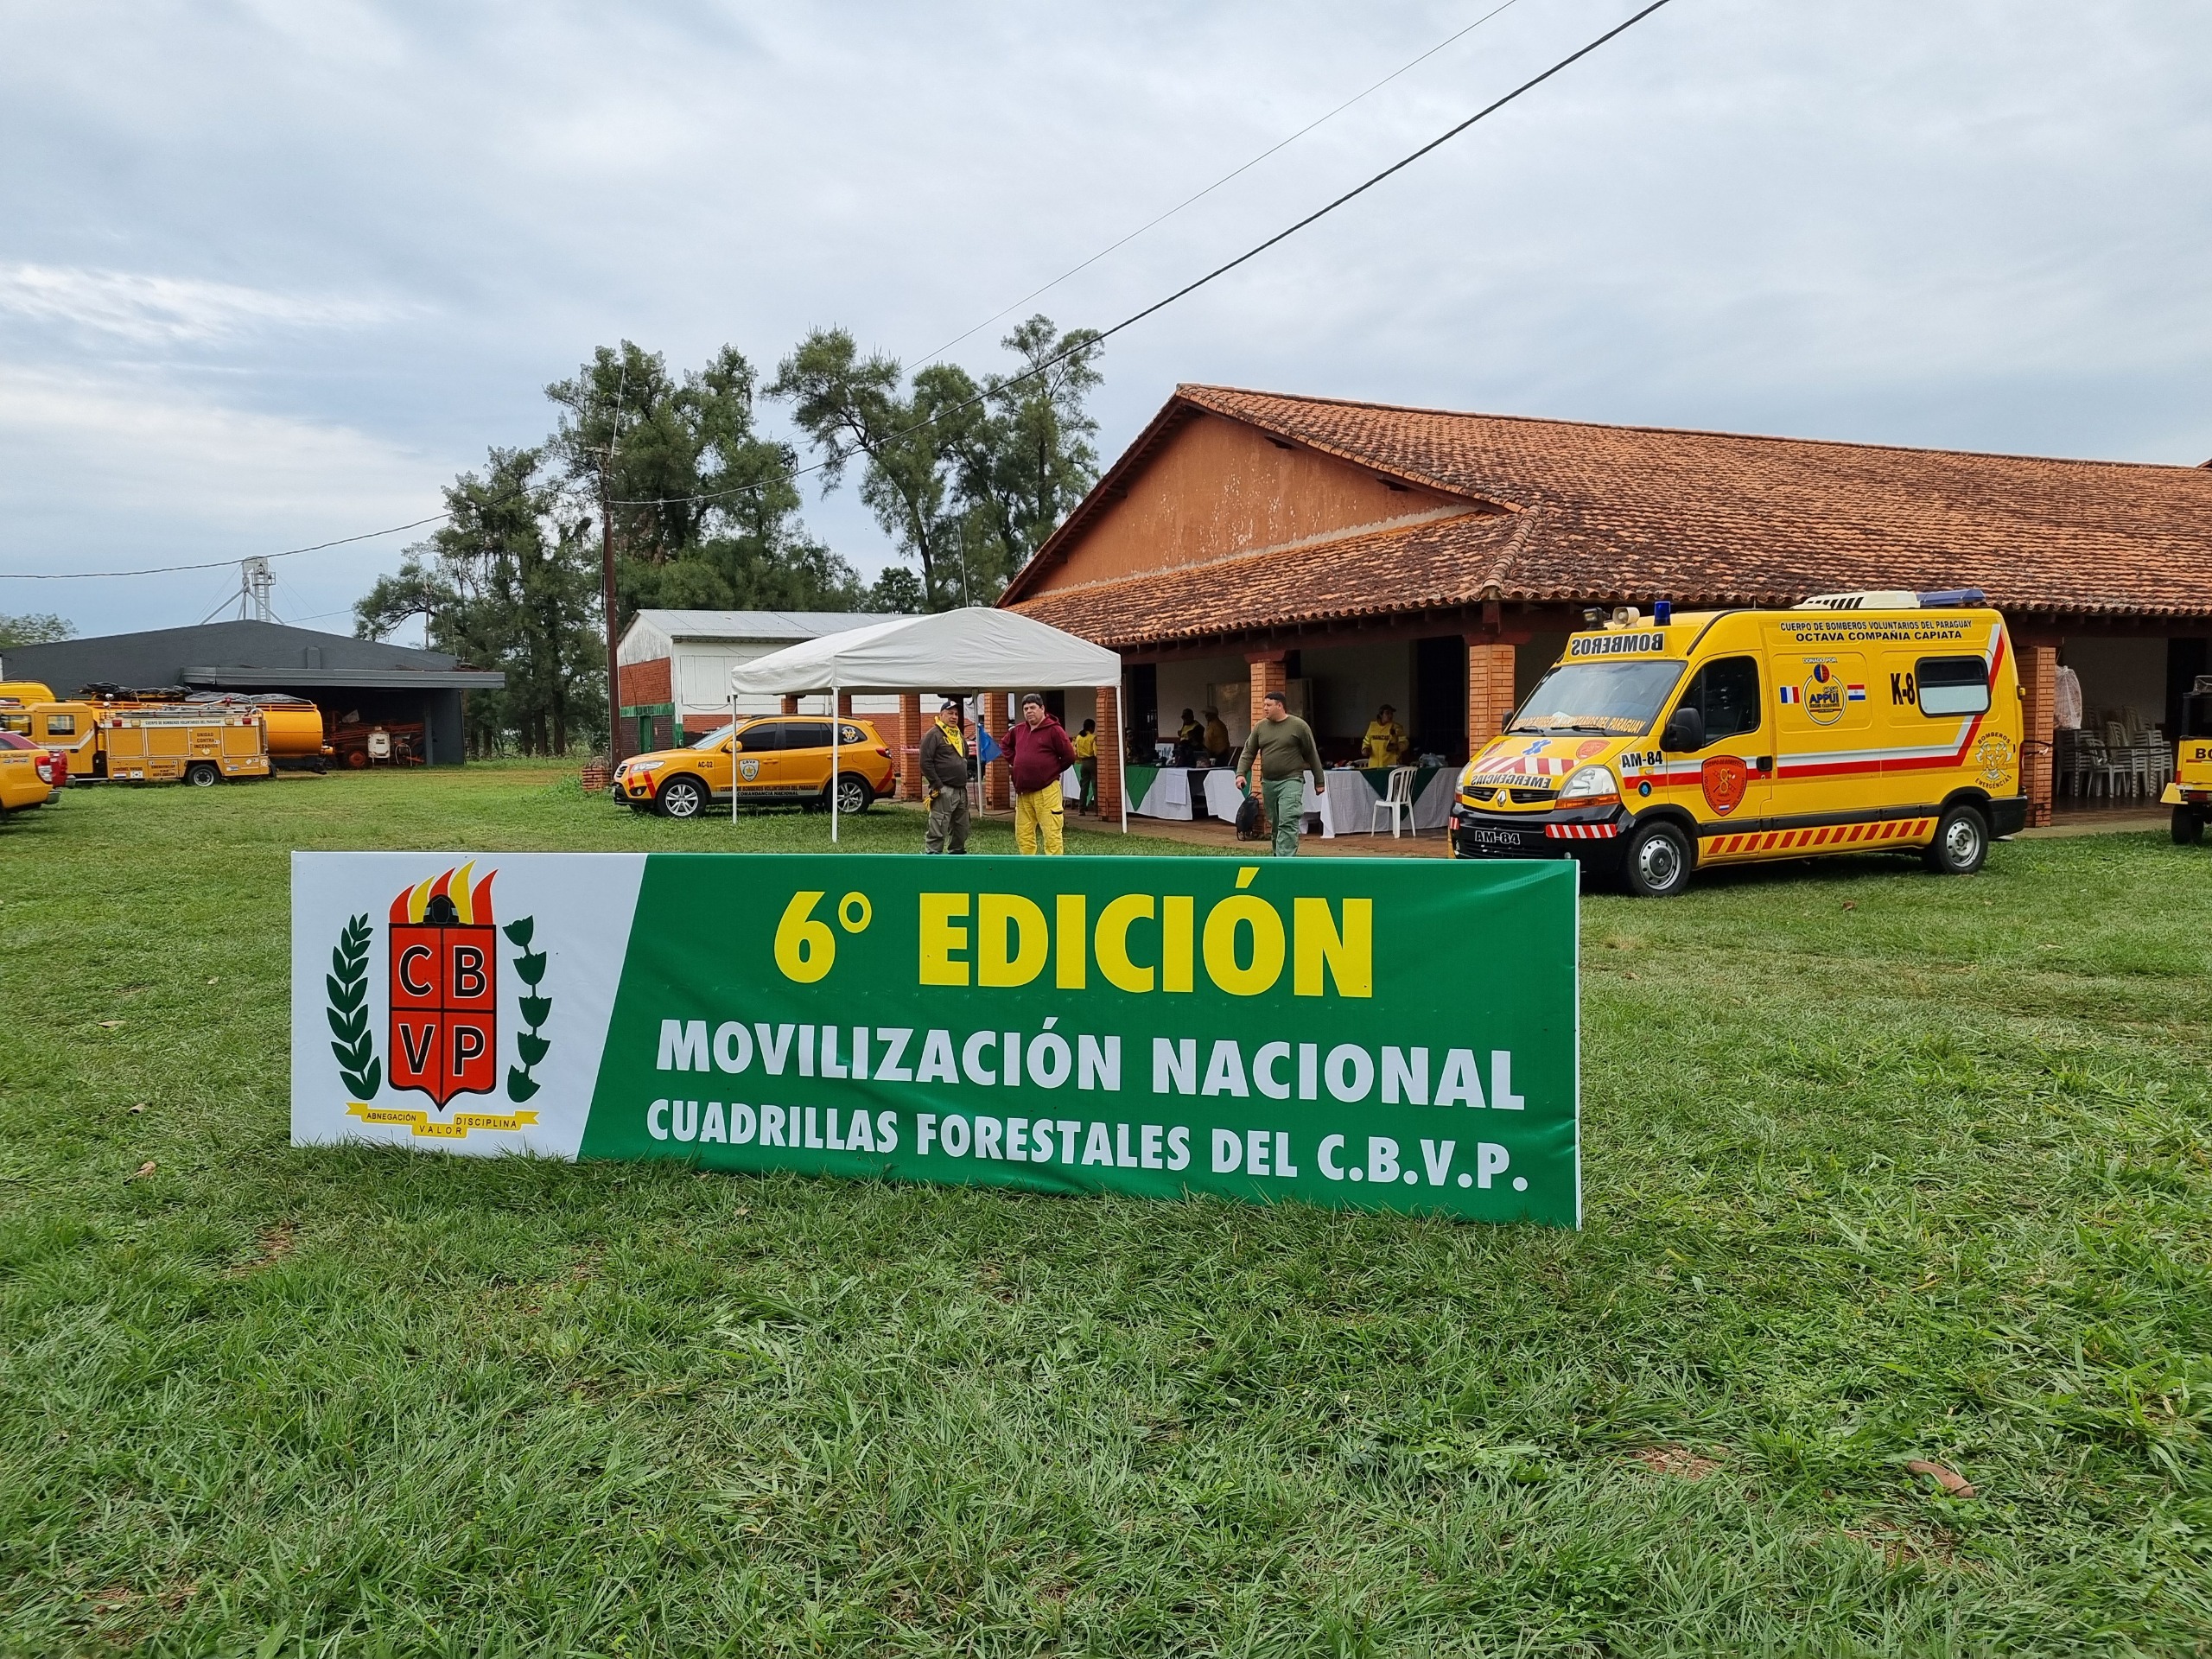 Movilización nacional de cuadrillas forestales